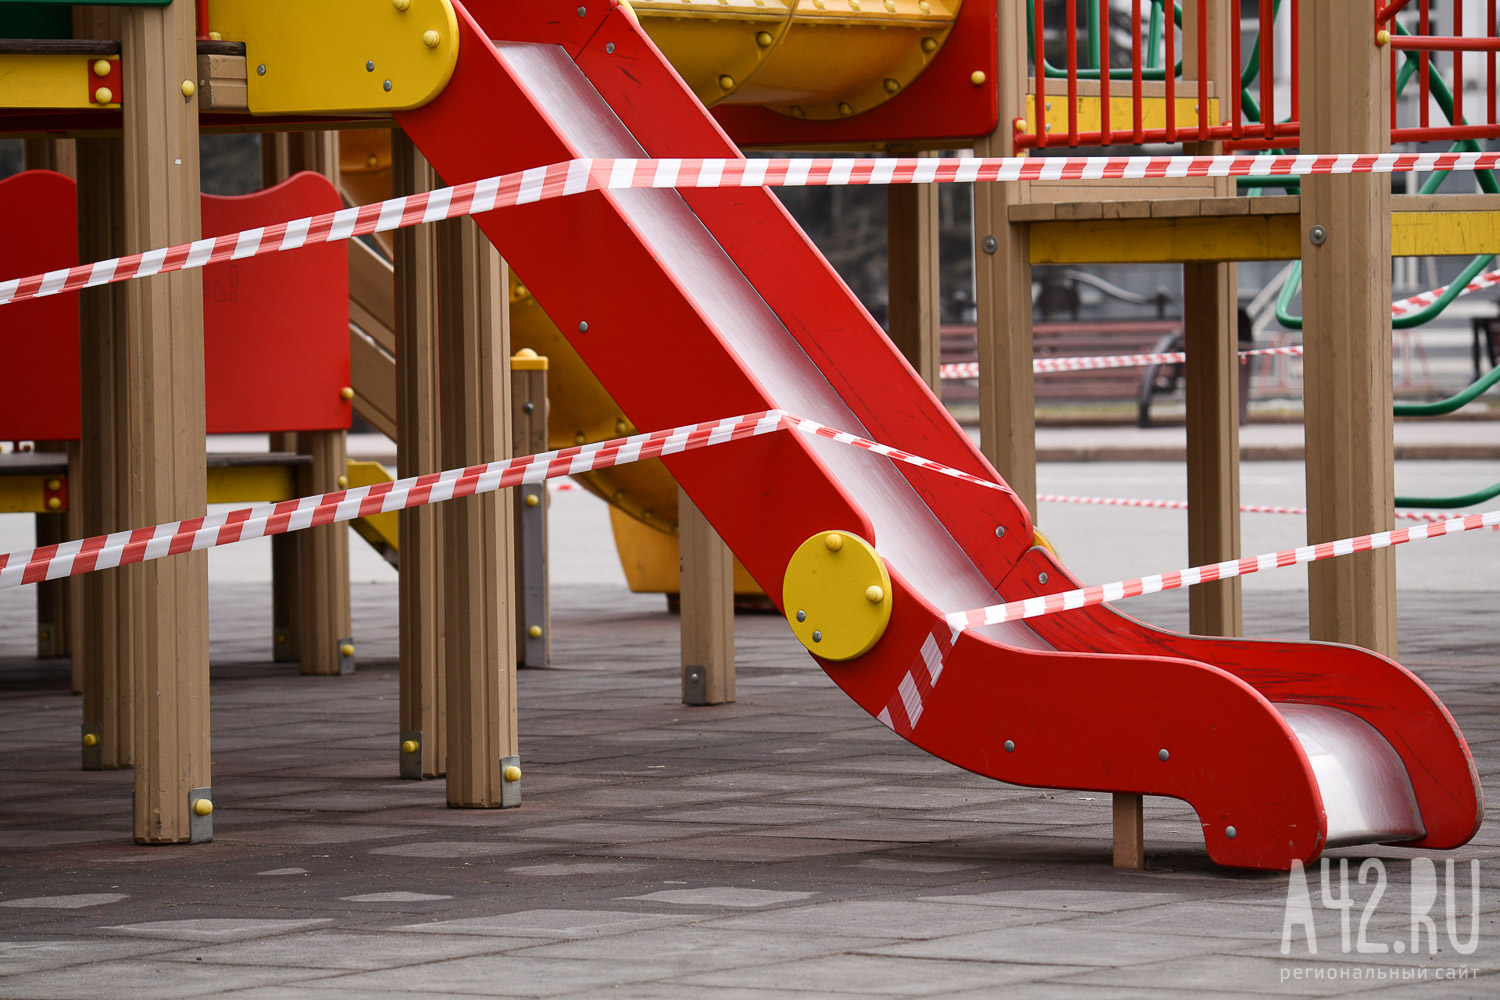 Очевидцы: ребёнок разбил нос на разрушенной детской площадке в Кузбассе